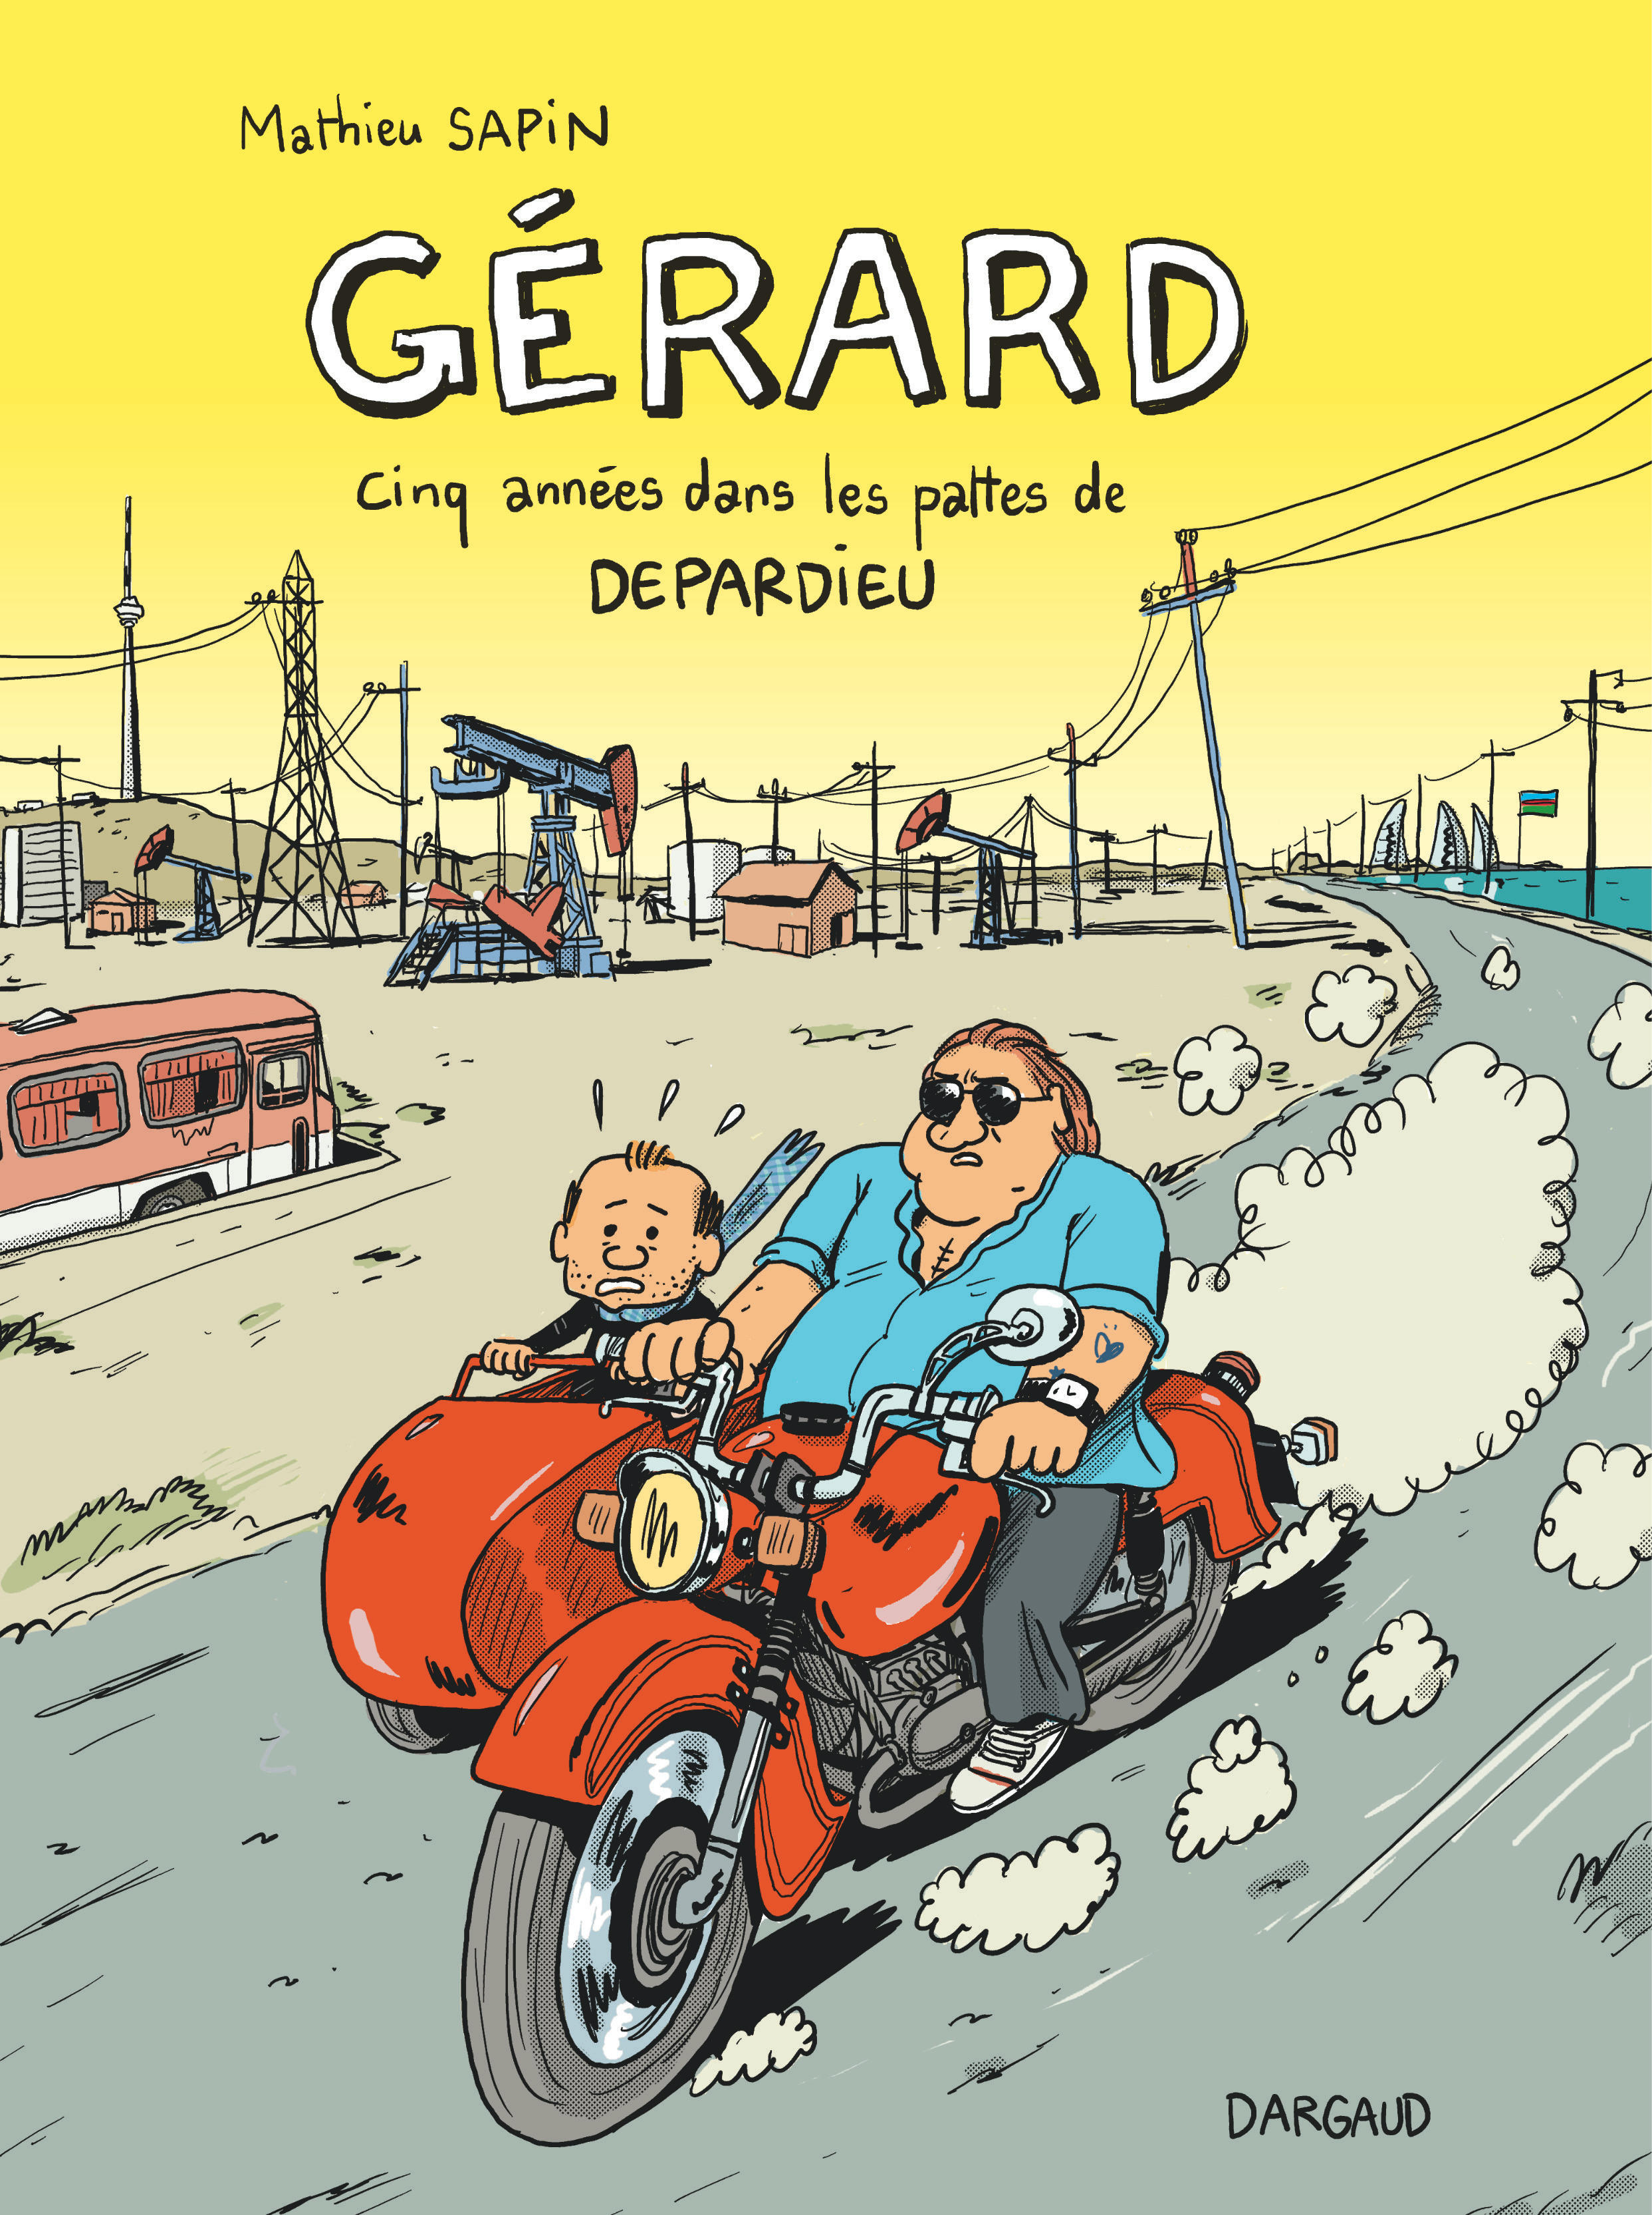 Gérard, cinq années dans les pattes de Depardieu - couv